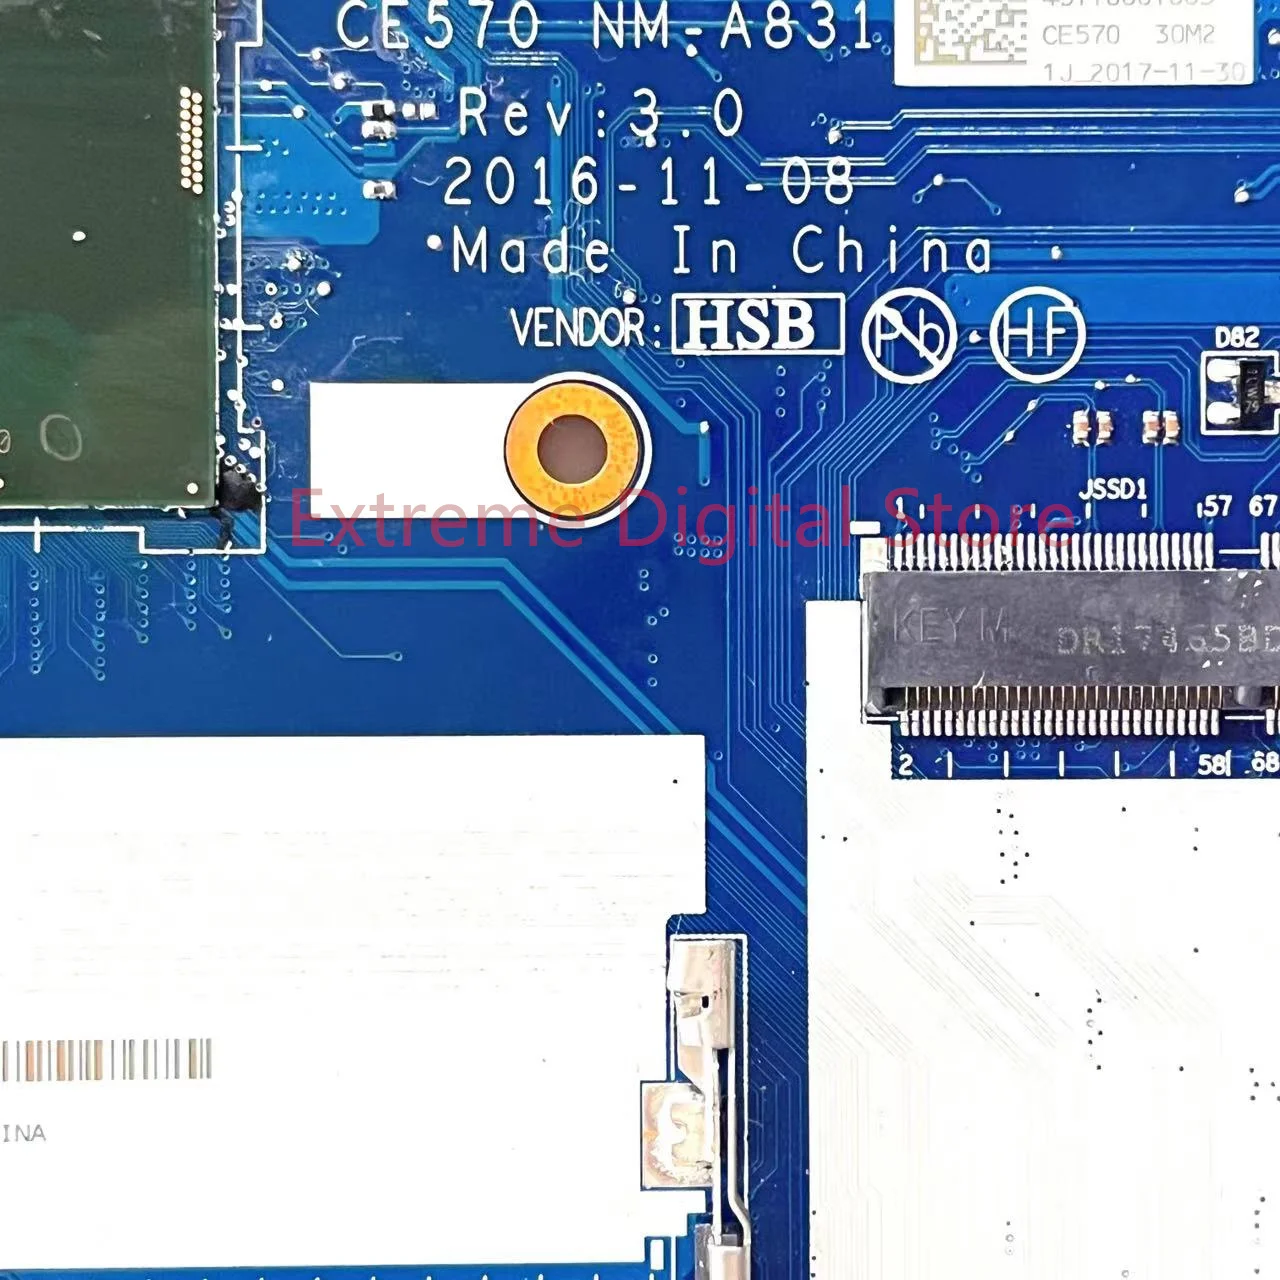 Для Lenovo Thinkpsd E570 материнская плата ноутбука CE570 NM-A831 с процессором I5-7200U GTX940M 2G DDR4 100% Протестирована, Полностью Работает Изображение 1